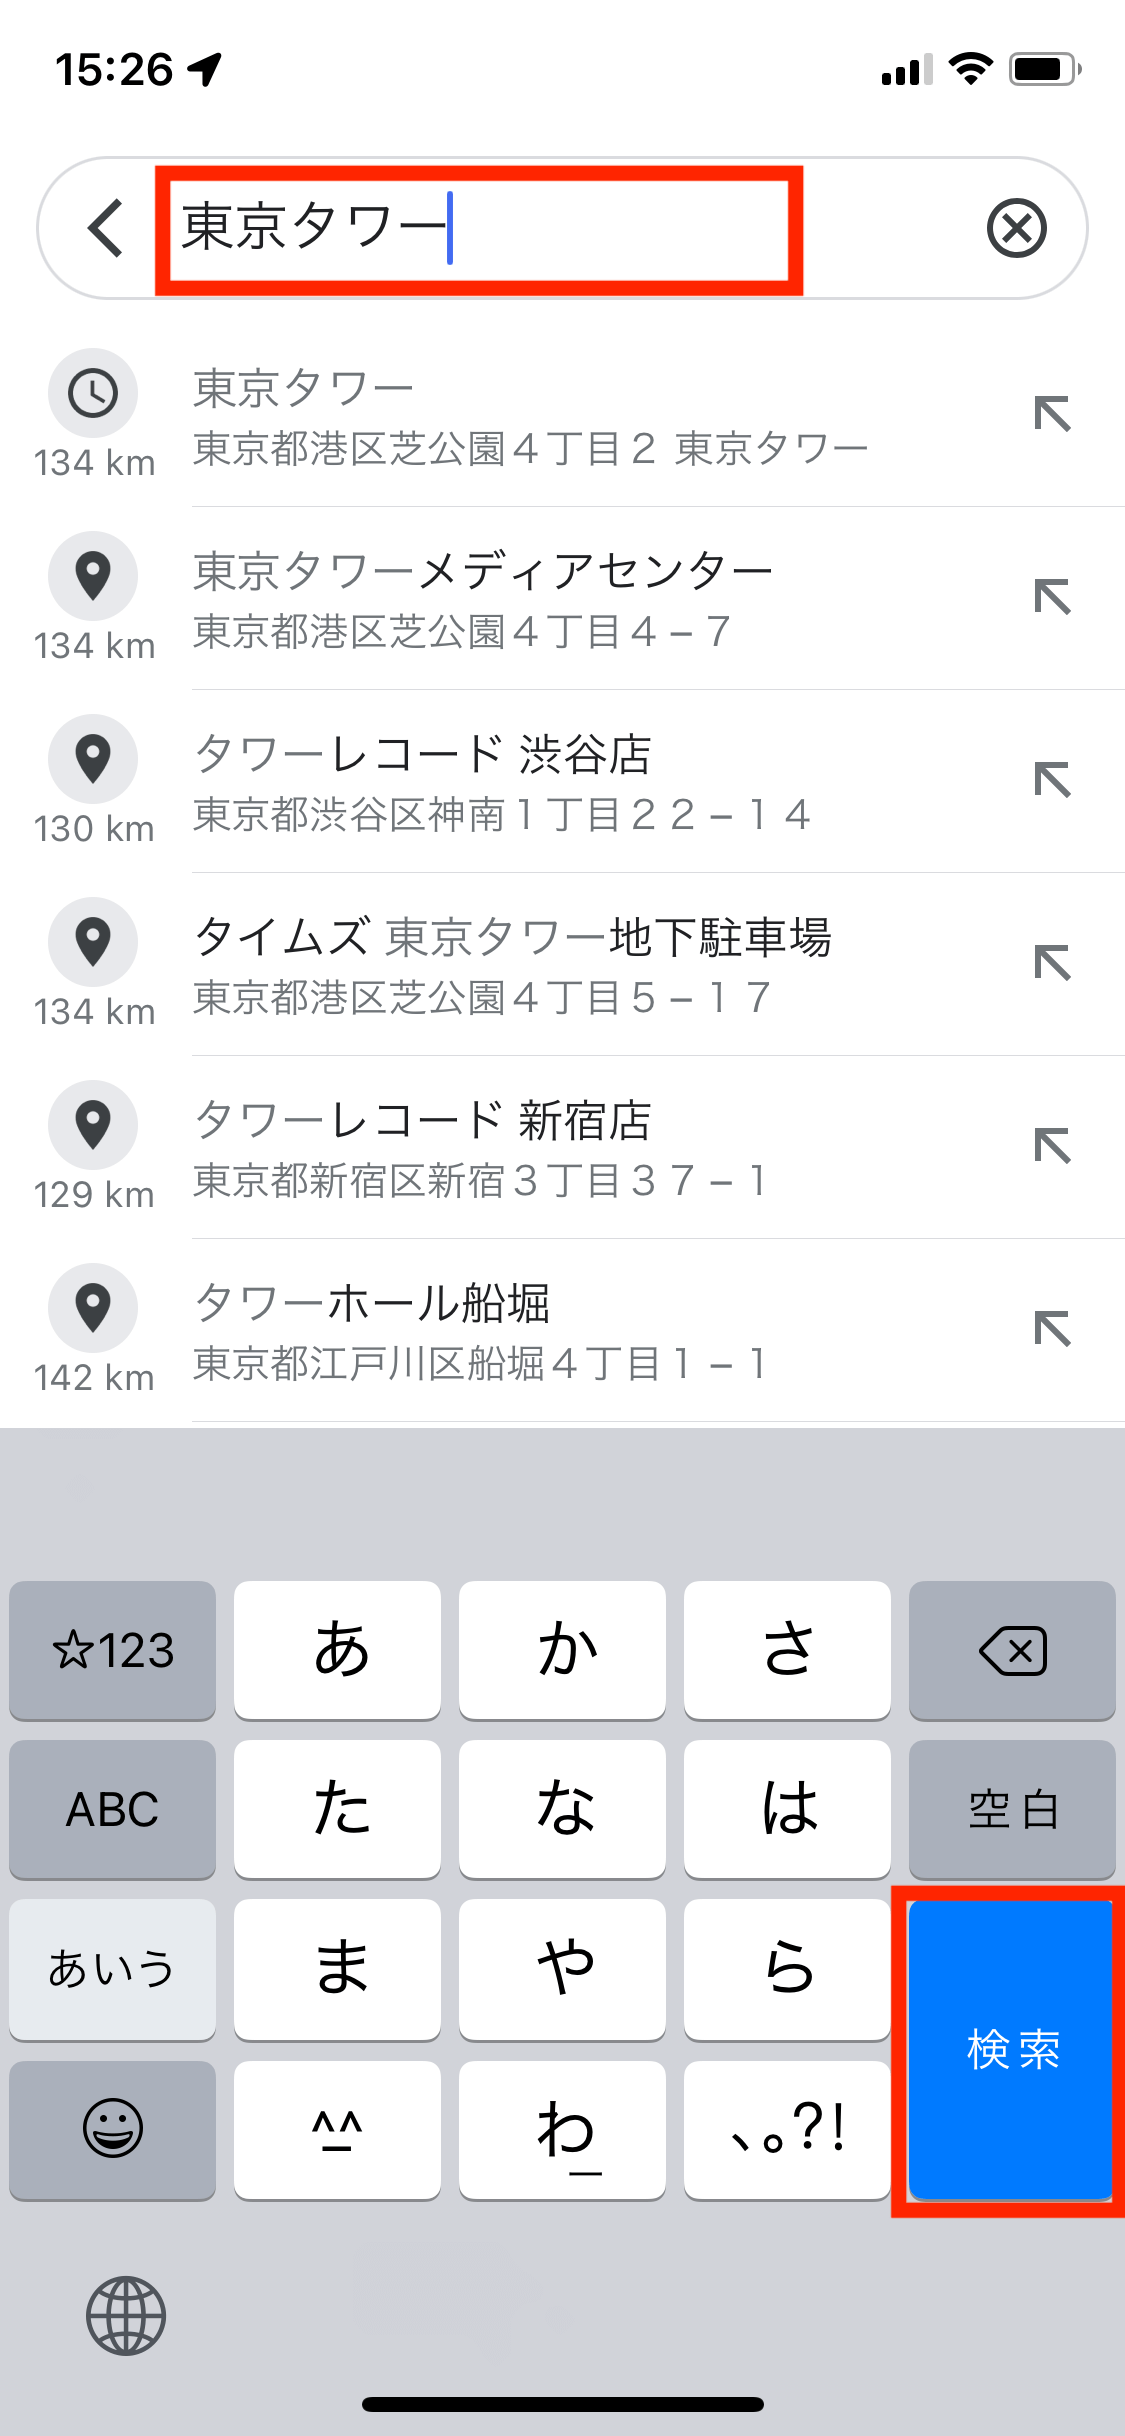 Googleマップで目的の場所か住所を入力し、「検索」をタップします。の操作のスクリーンショット